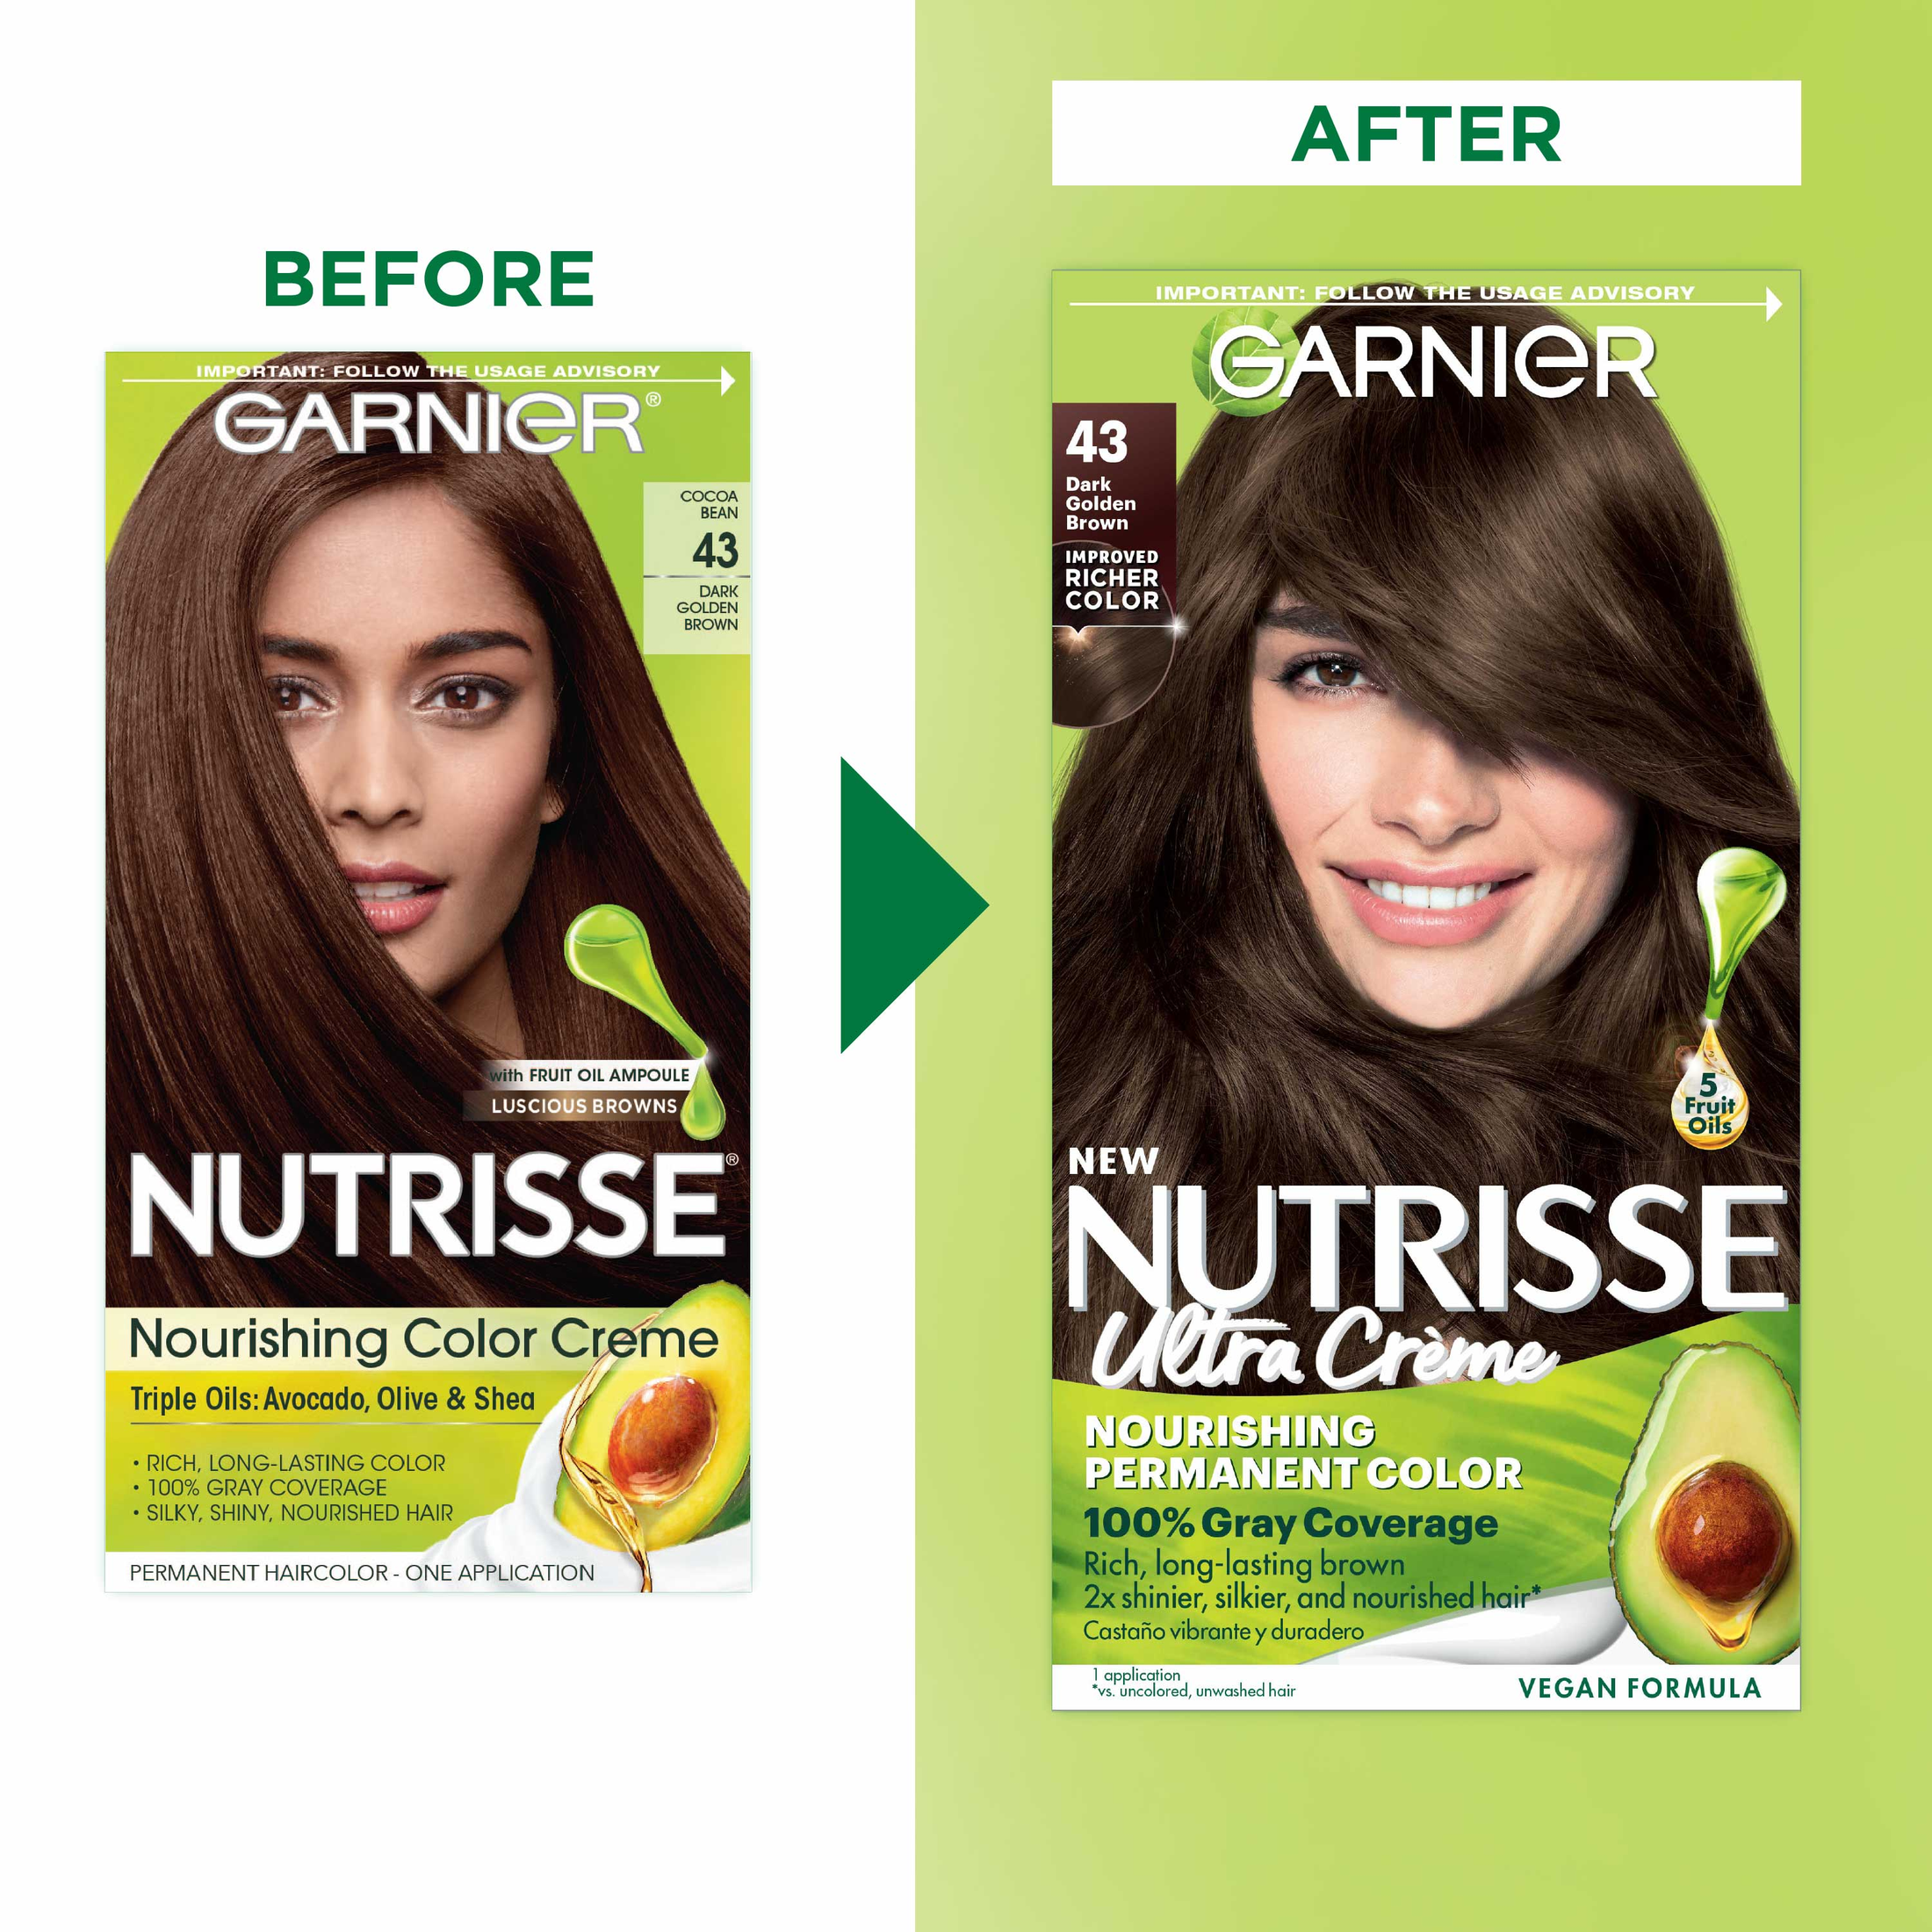 Garnier Nutrisse Nourishing Color Creme Hair Color, 43 Dark Golden Brown - image 4 of 10